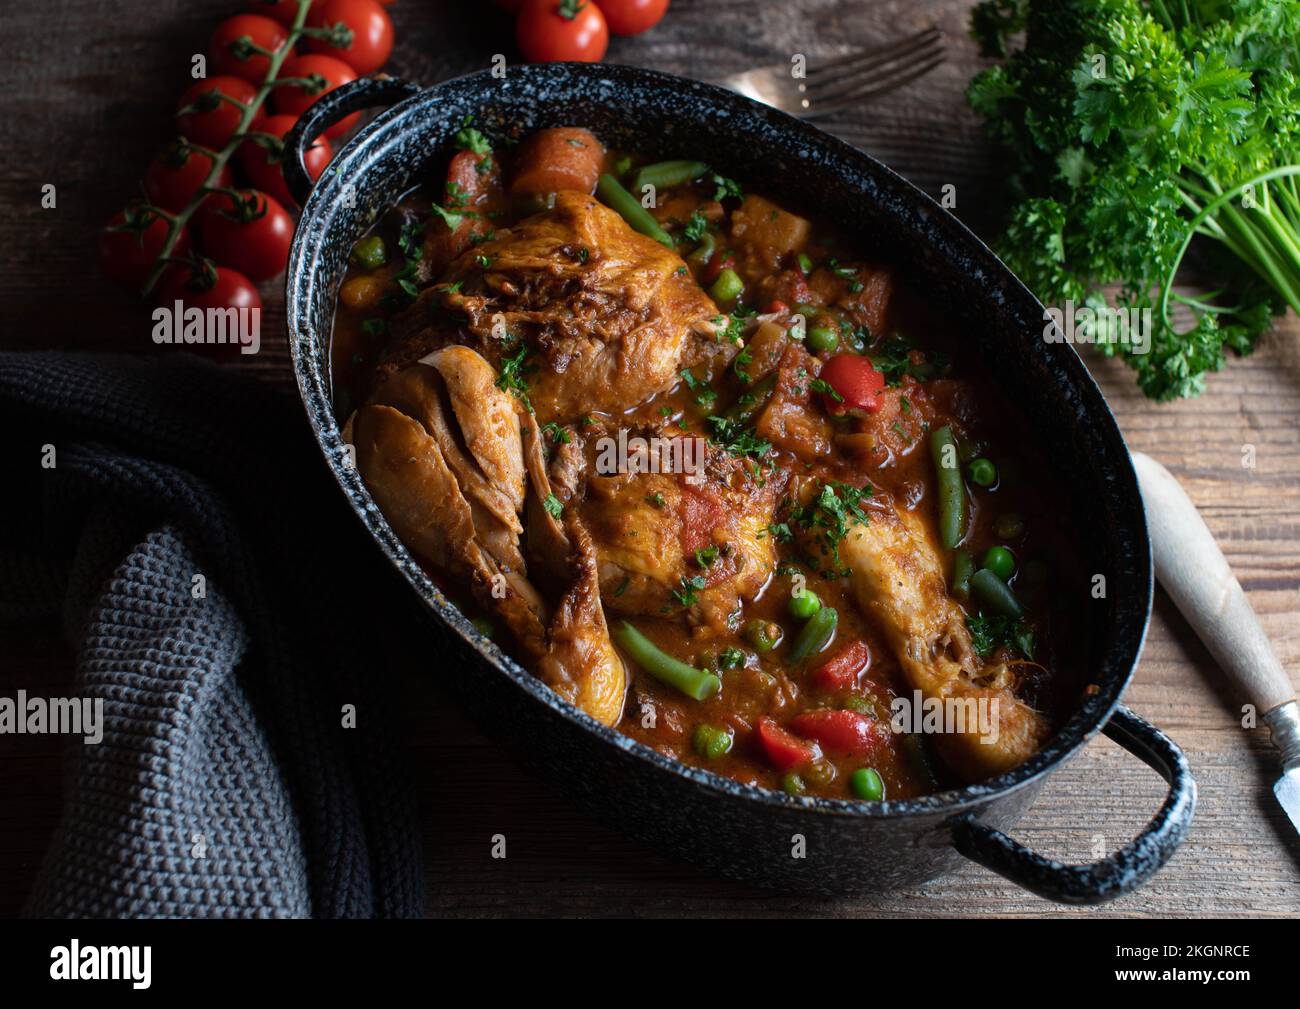 Ragoût de poulet brun avec légumes, pommes de terre et légumineuses dans un pot à l'ancienne sur table en bois Banque D'Images